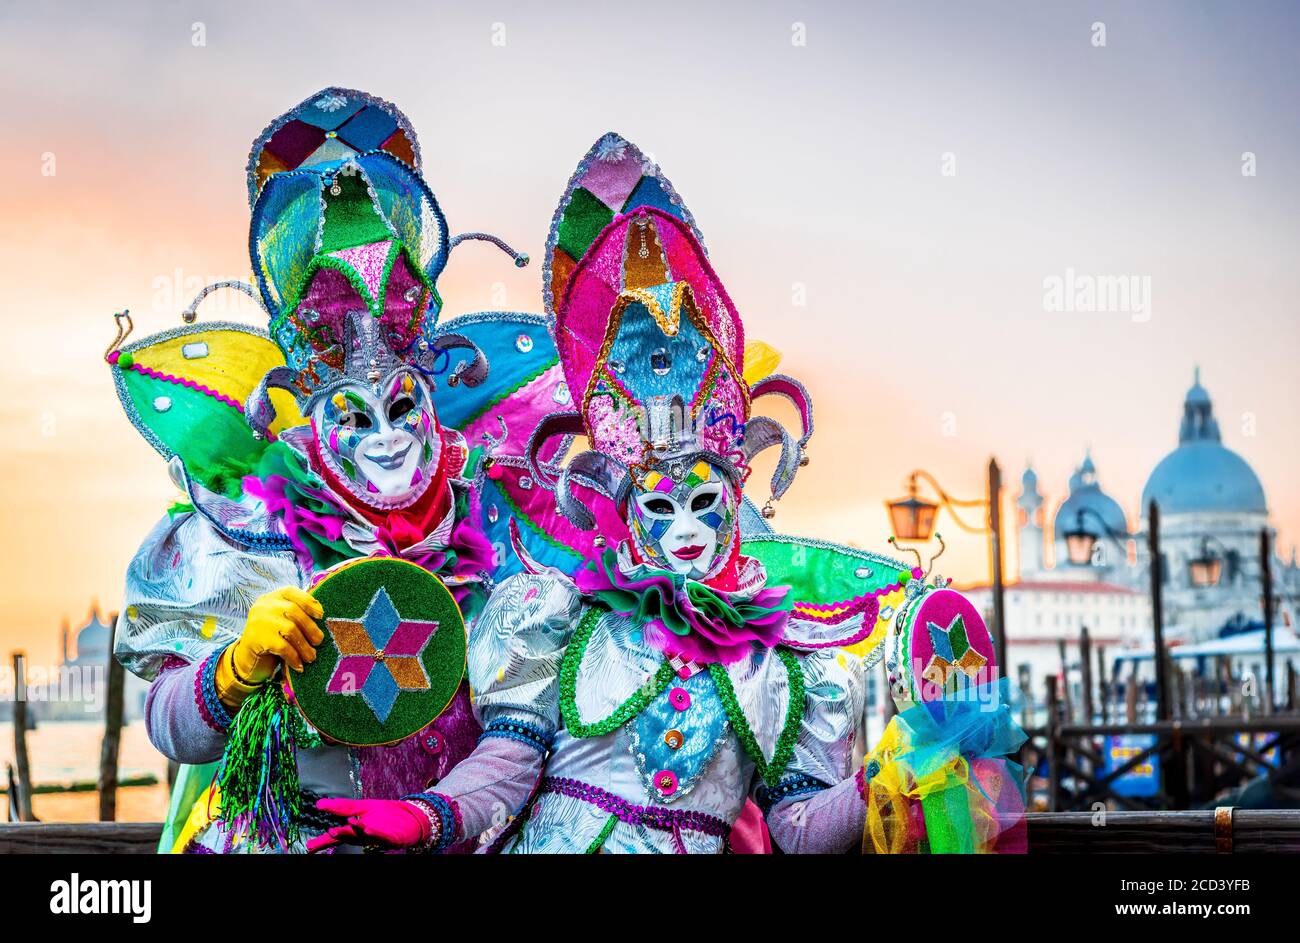 Venezia, Italia, modello in maschera veneziana del Carnevale di Venezia, con gondole sullo sfondo, Canal Grande Foto Stock